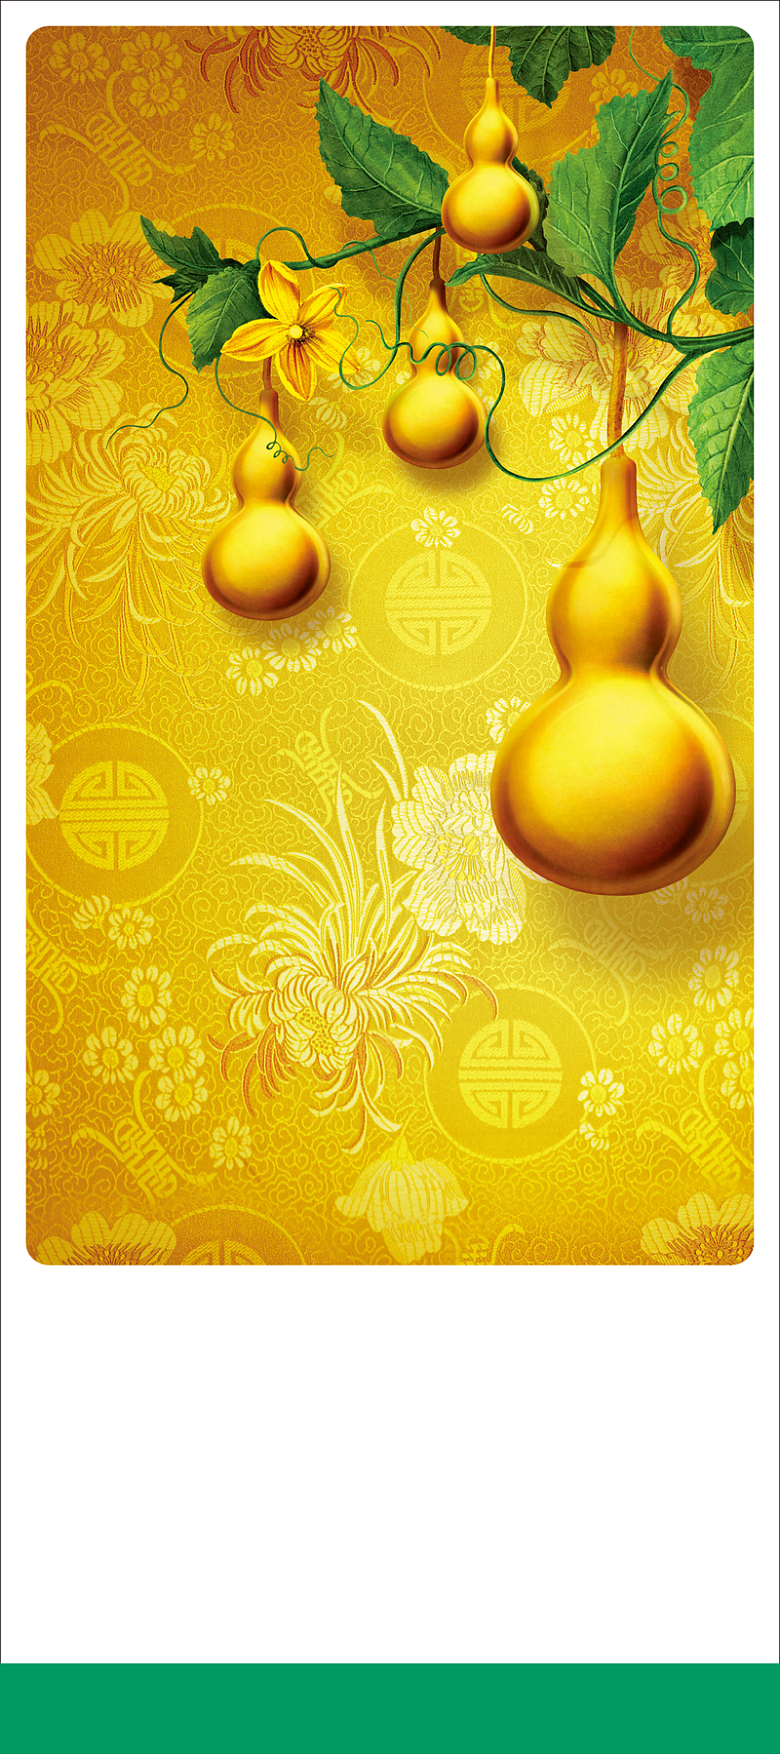 金色葫芦叶子花纹黄底背景素材